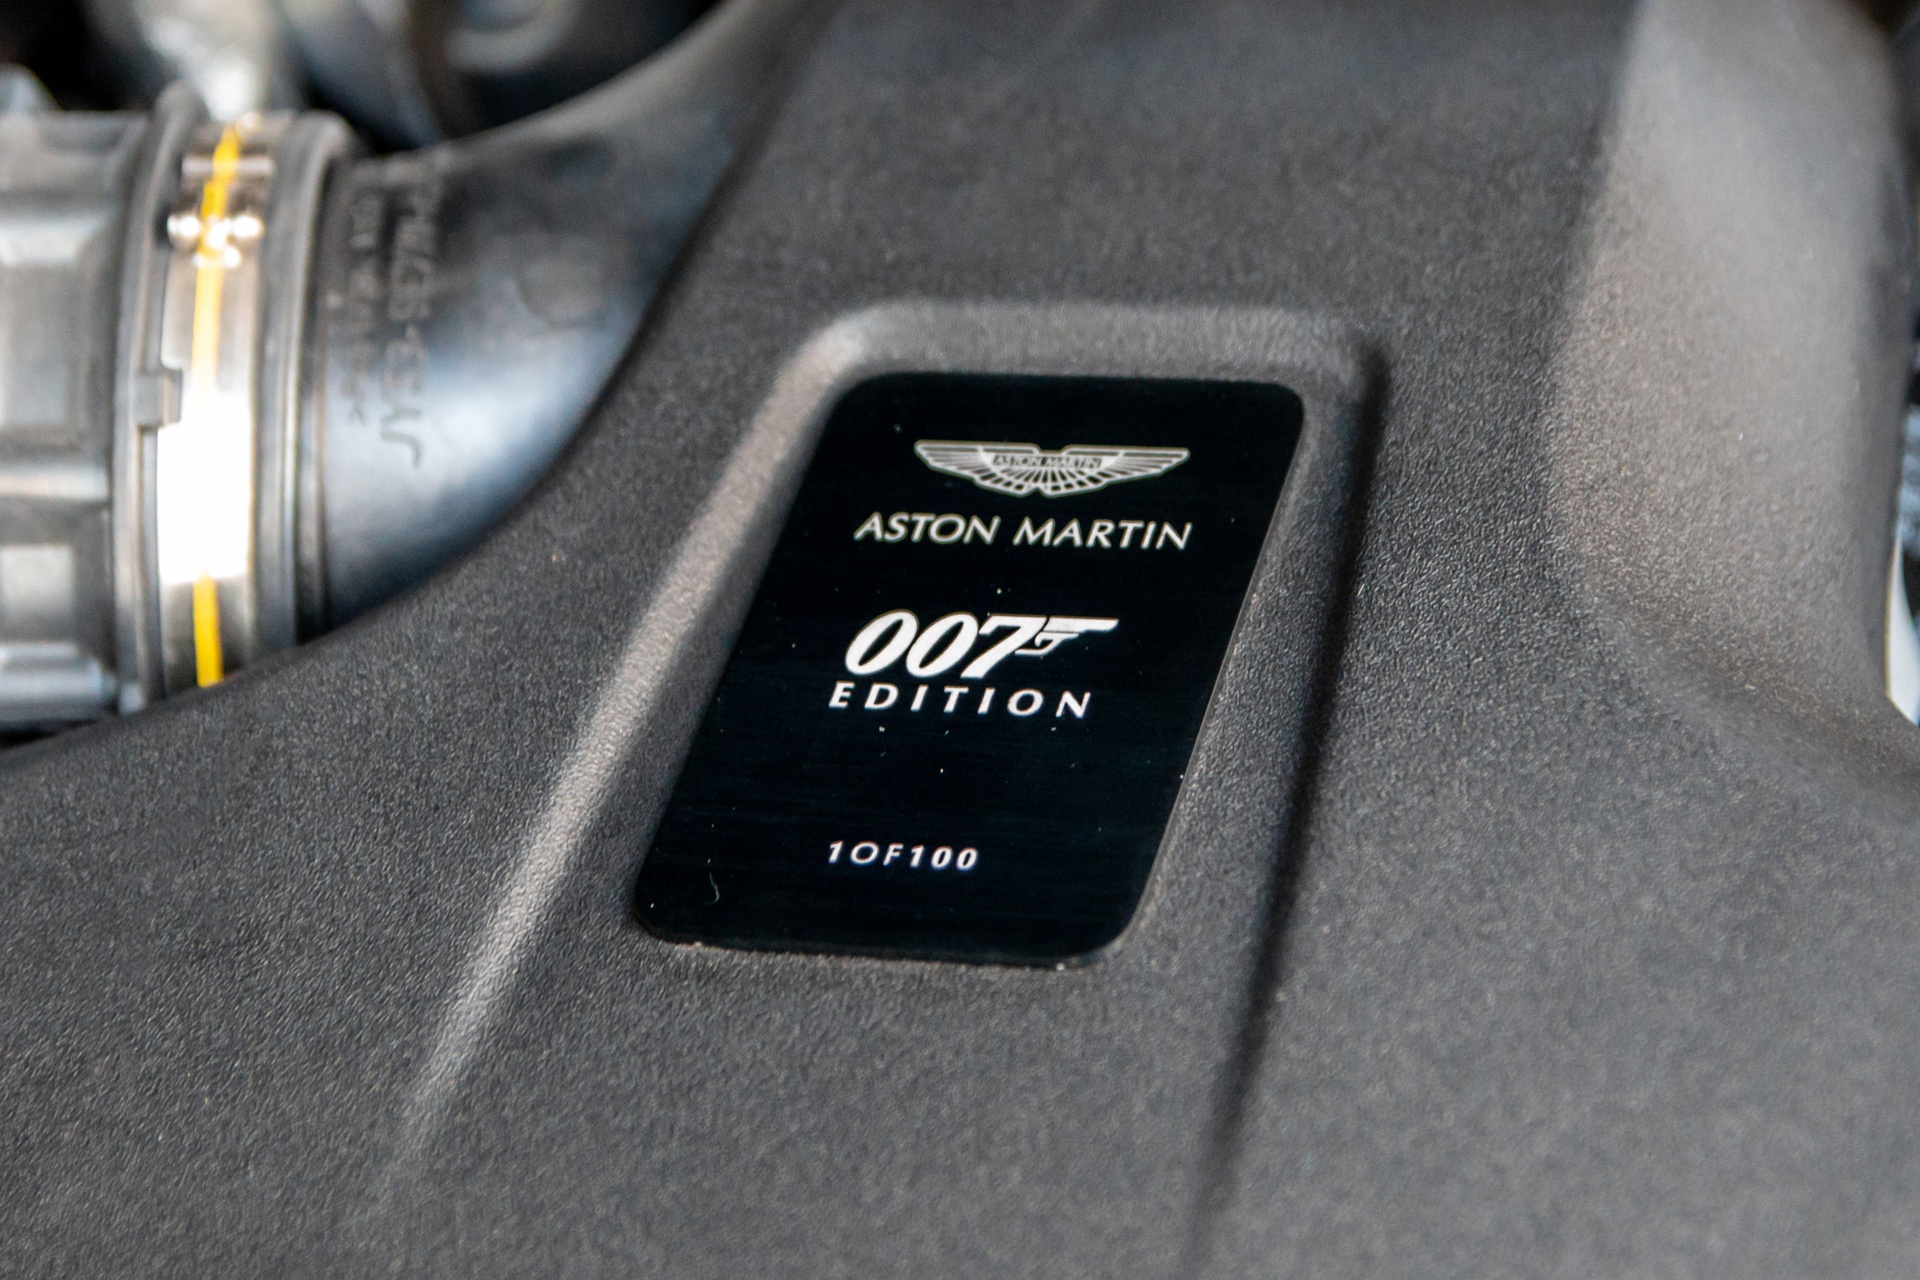 Aston Martin Vantage phiên bản 007 lần đầu lăn bánh tại Việt Nam - ảnh 6